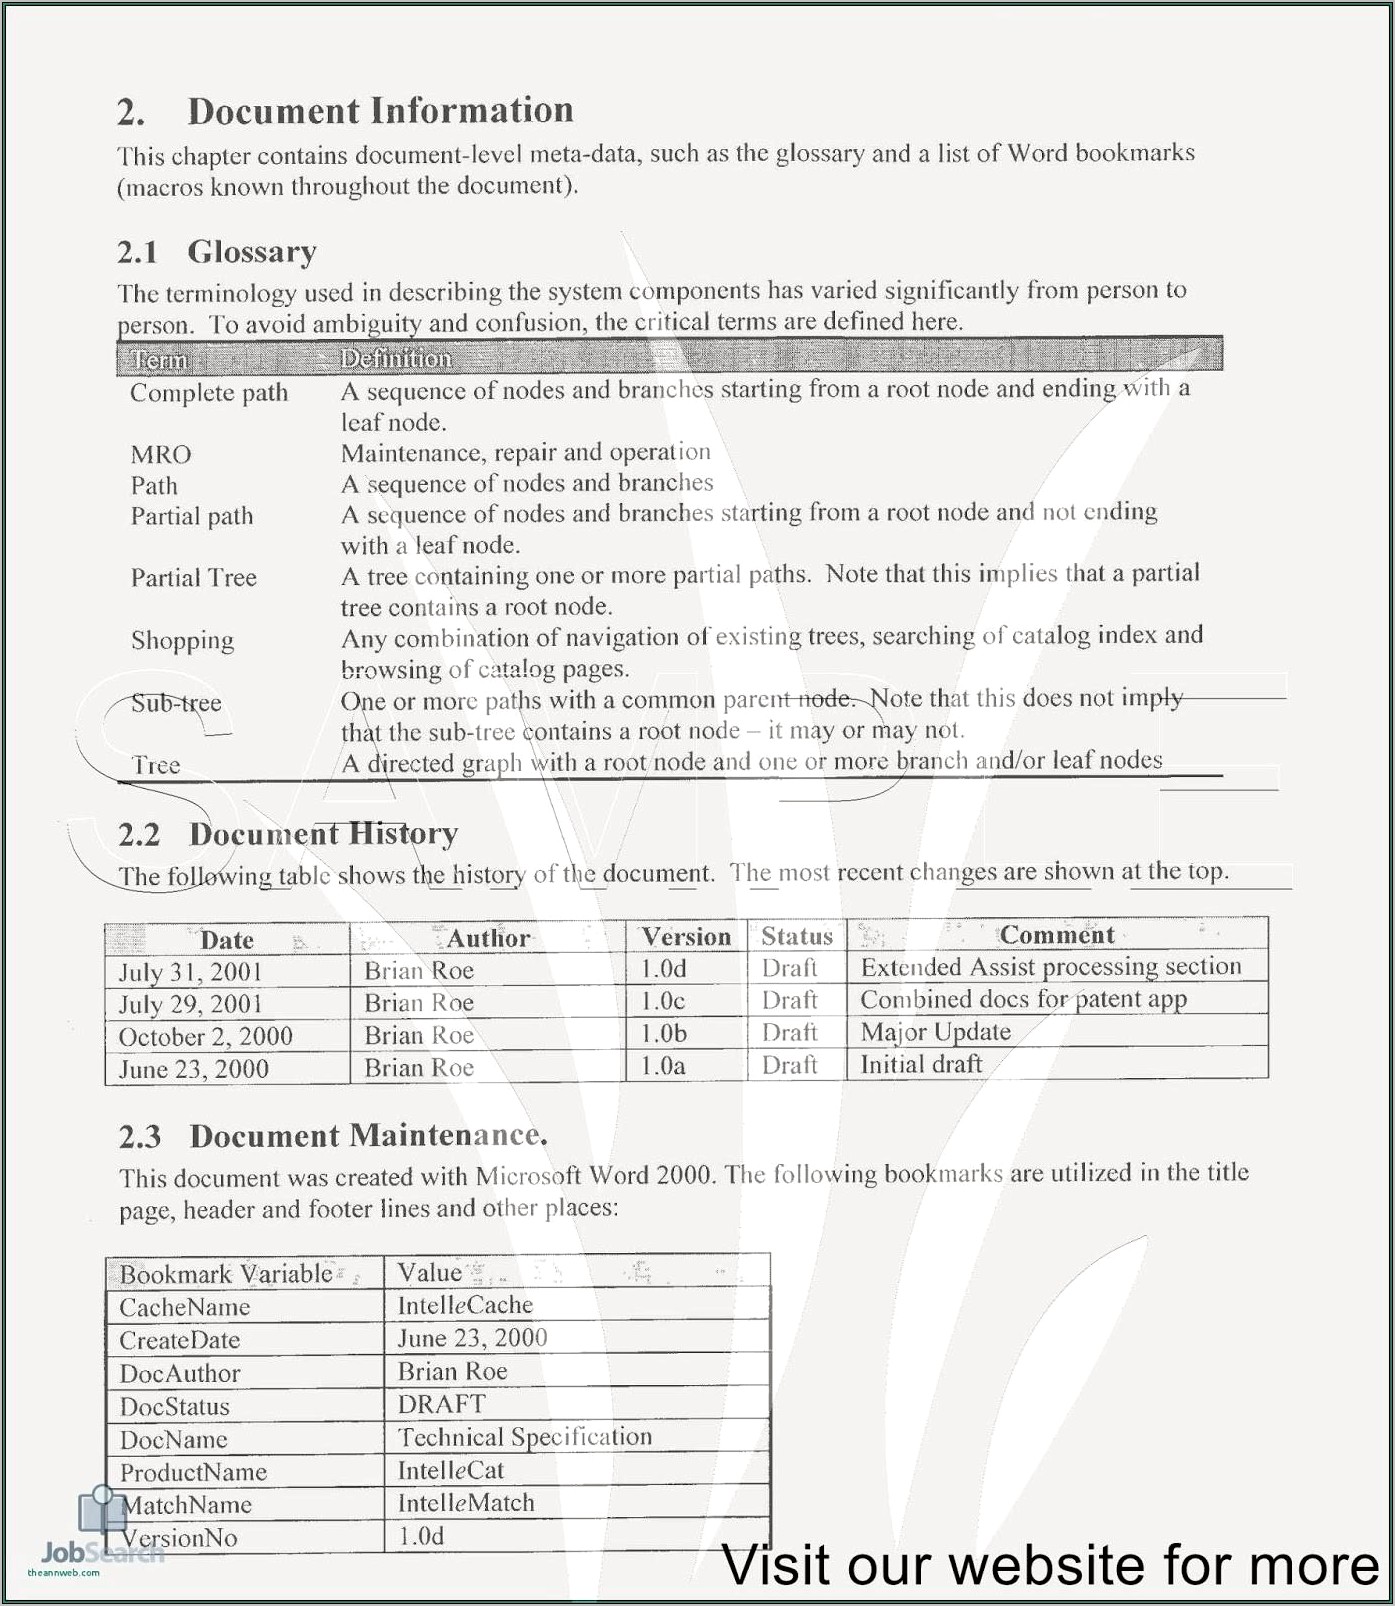 Child Care Worker Job Description For Resume